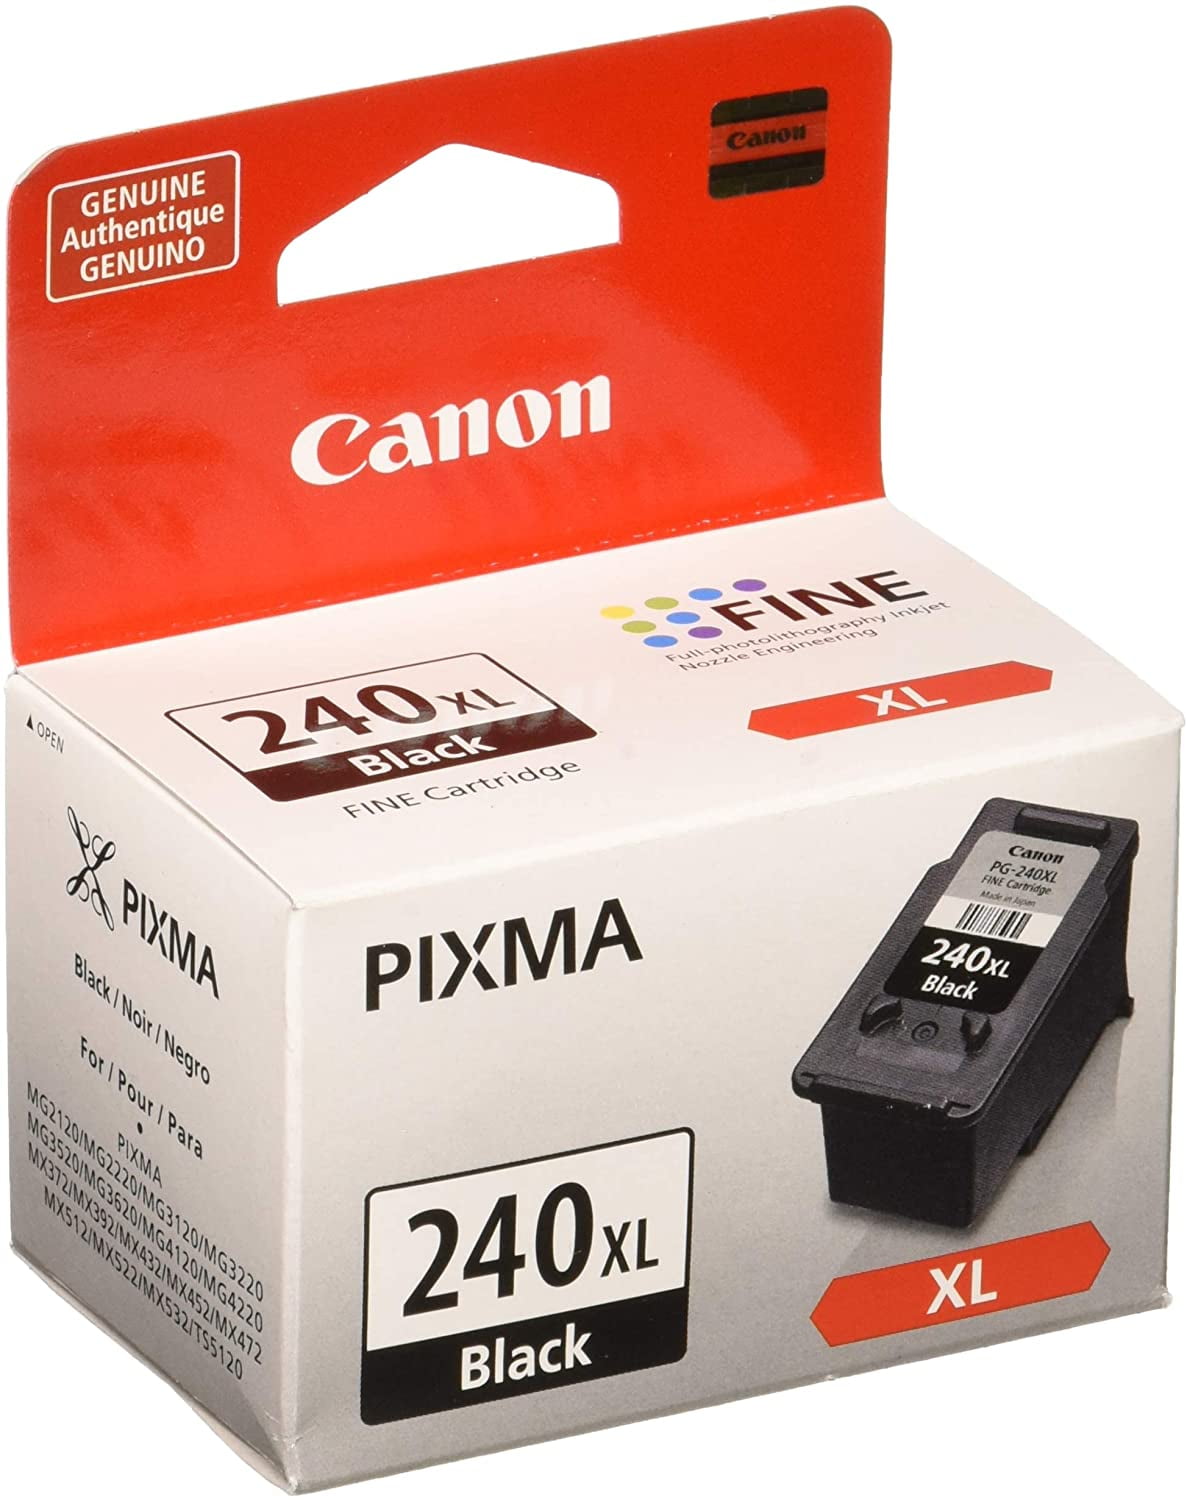 CANON PG-540 Fine Black Cartridge NEW & ORIGINAL for PIXMA MG / MX